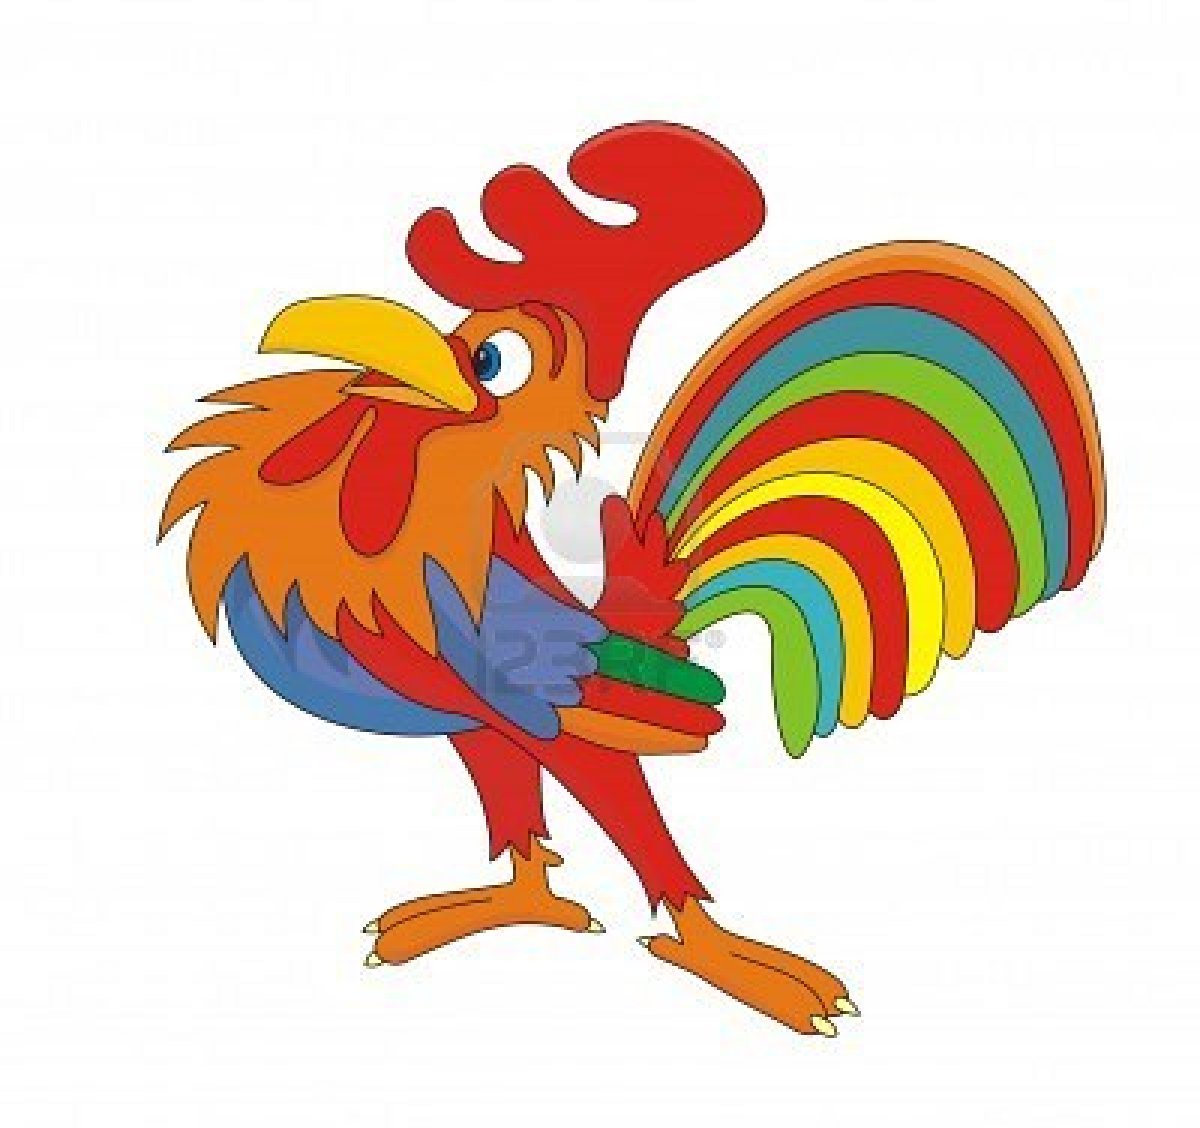 cursillo rooster clip art - photo #24